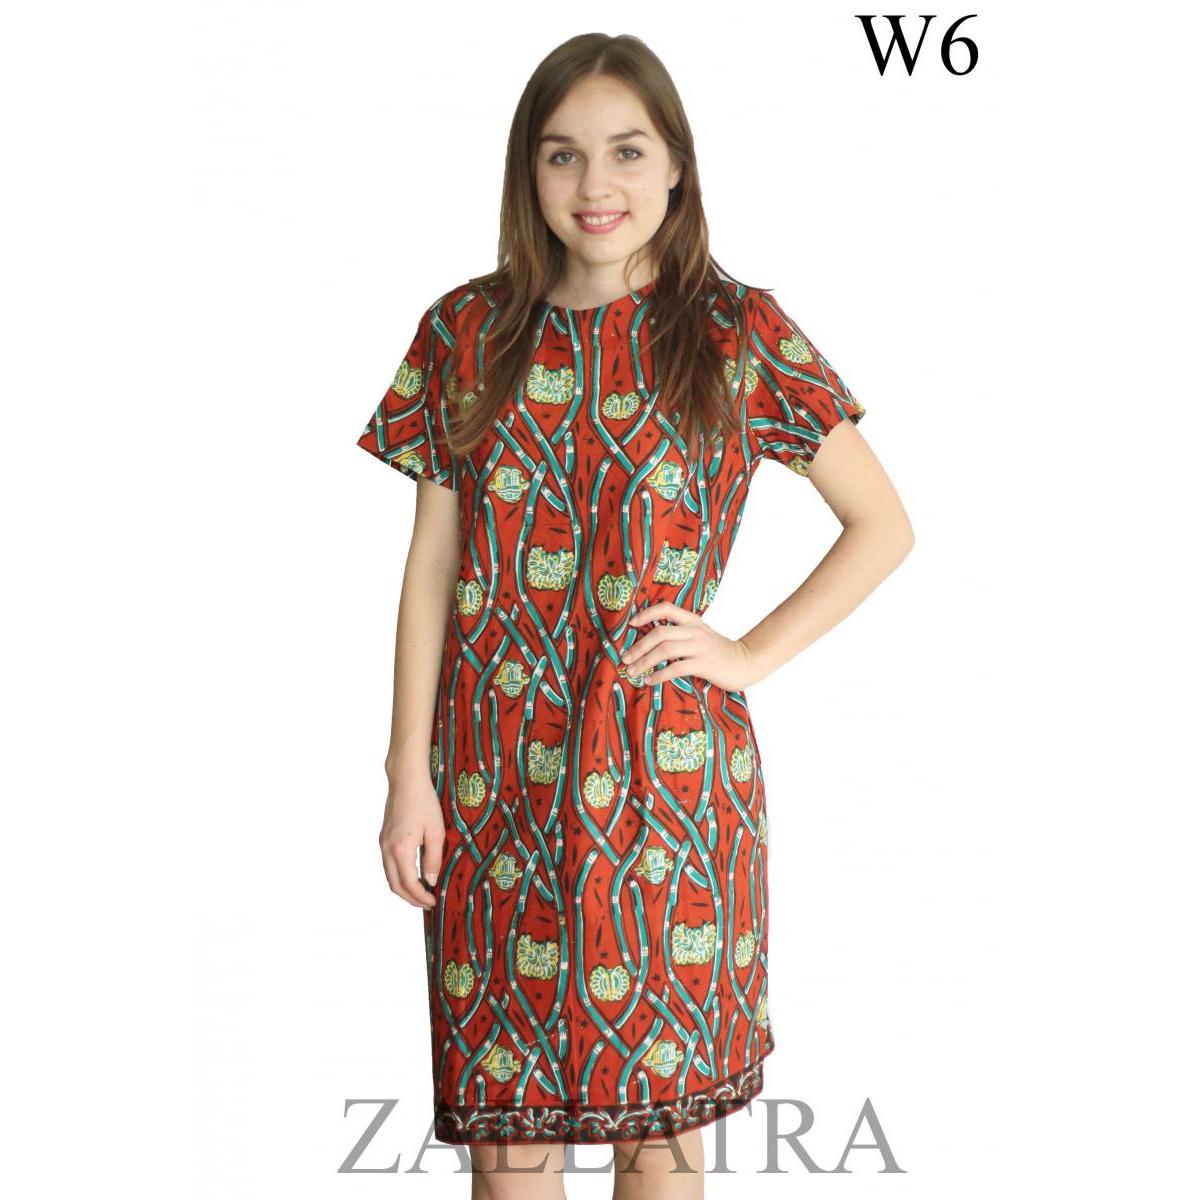  Model fashion batik yang tampil makin modern dan modis kini menjadi salah satu jenis busa 36+ Info Terpopuler Baju Batik Dress